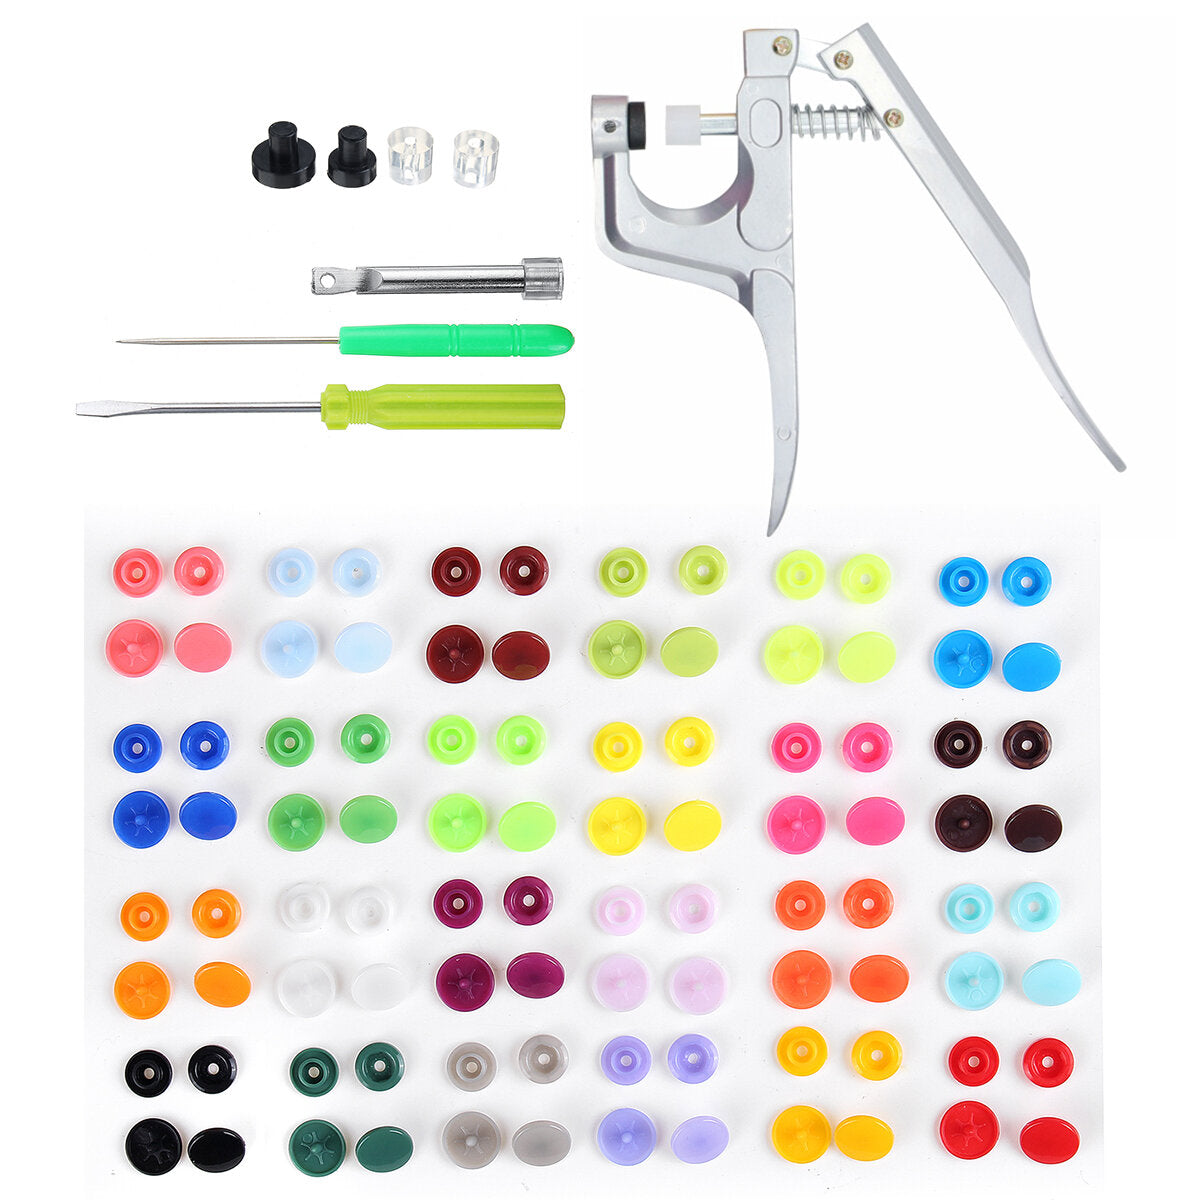 150 stuks / 360 stuks hars plastic knoppen (15/24 kleuren) + 1 set druk tang